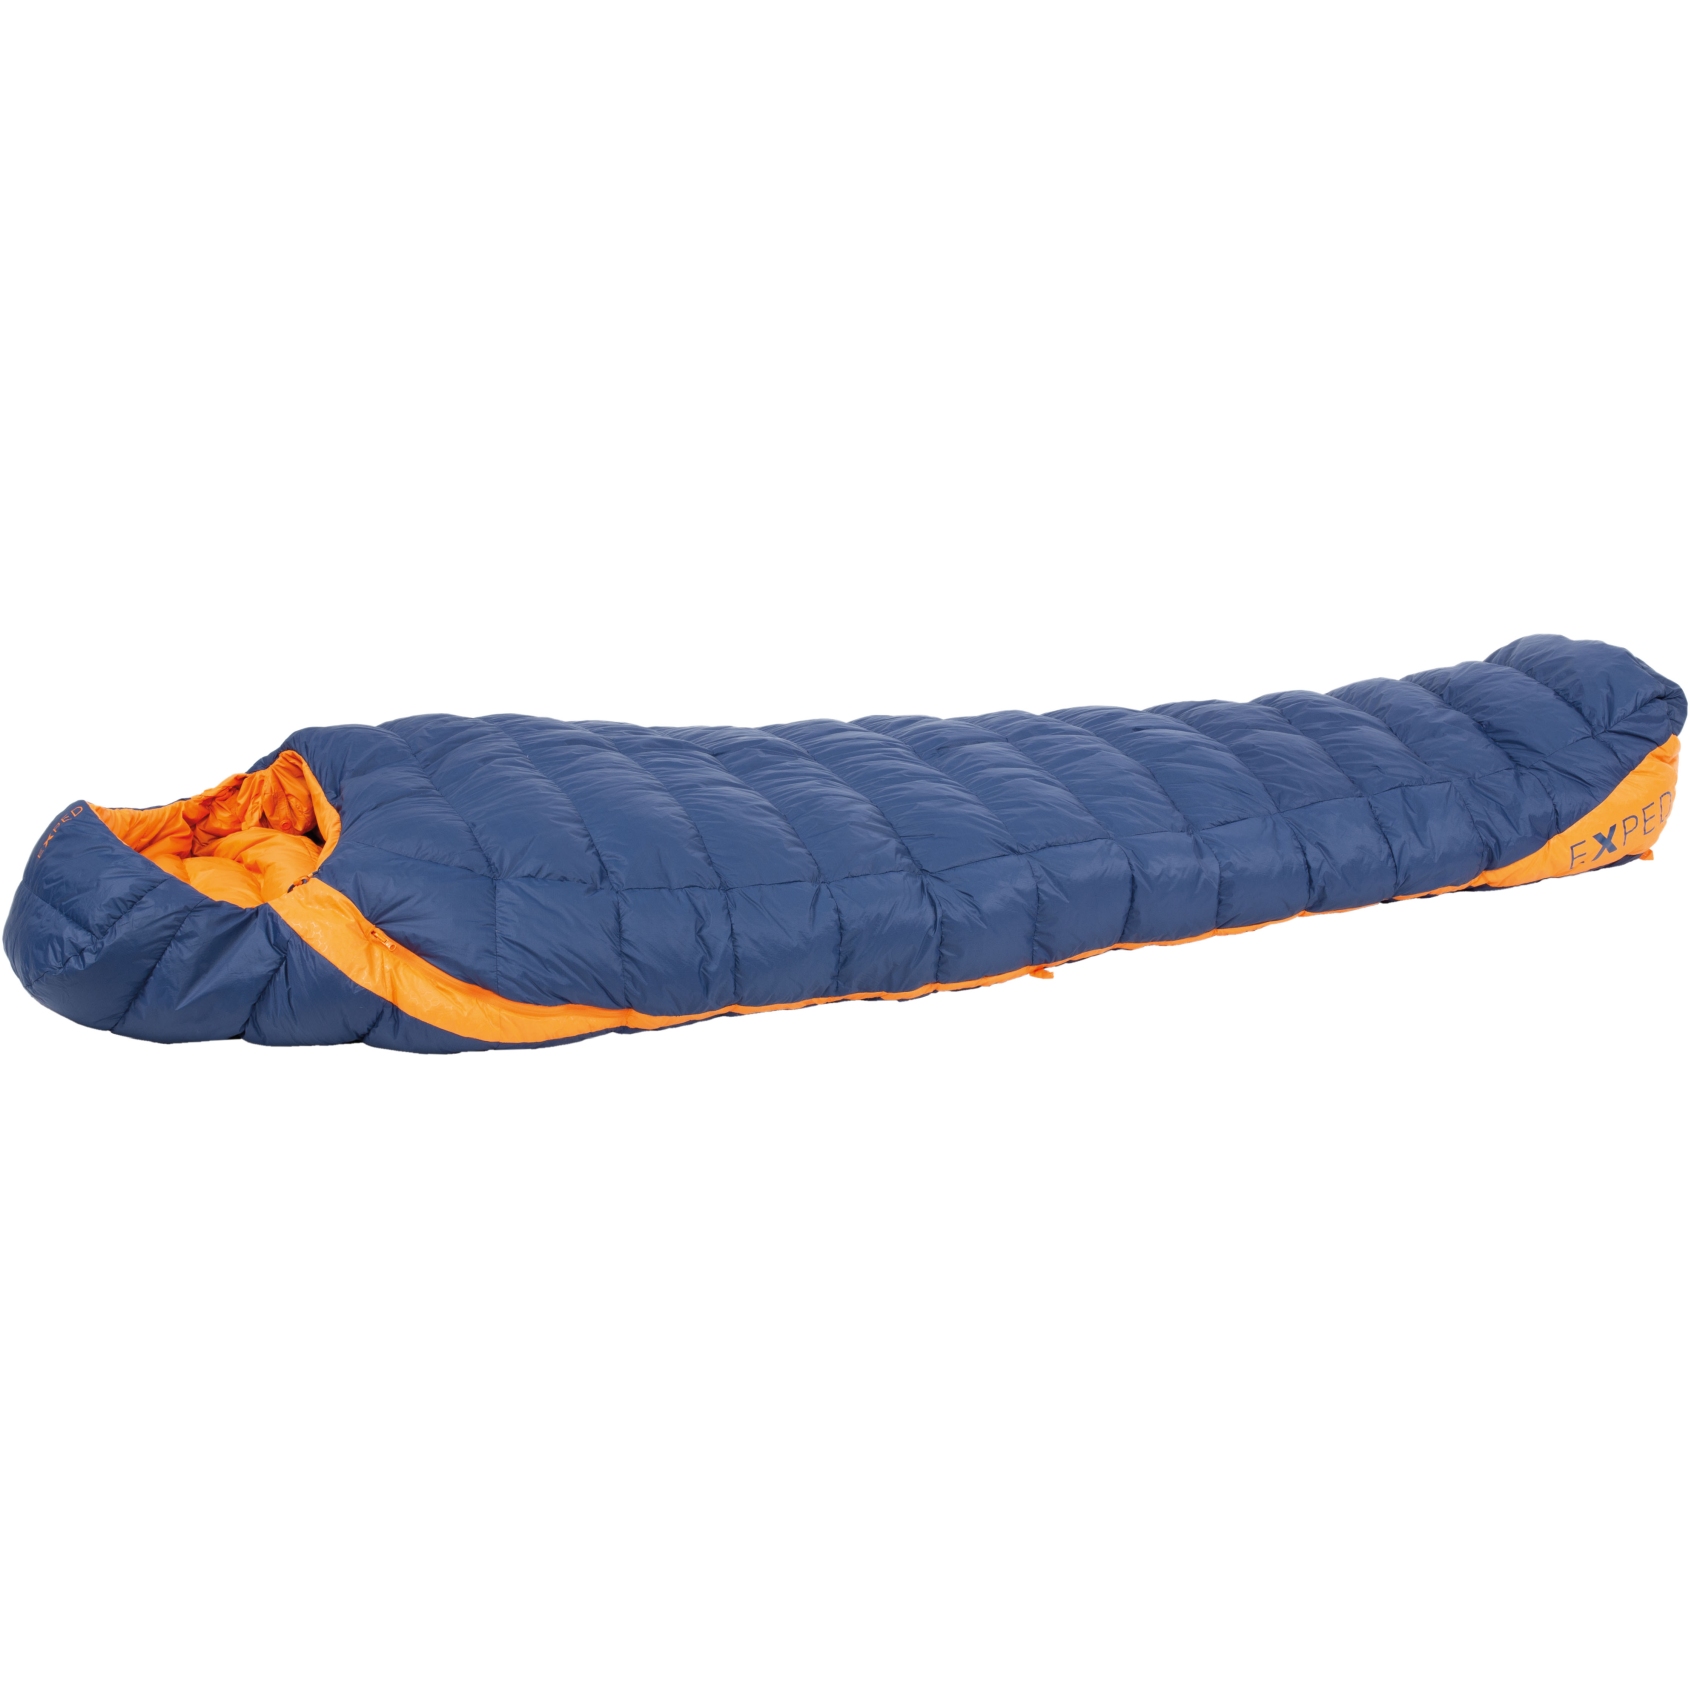 Produktbild von Exped Comfort -5° Schlafsack - L - blue/orange